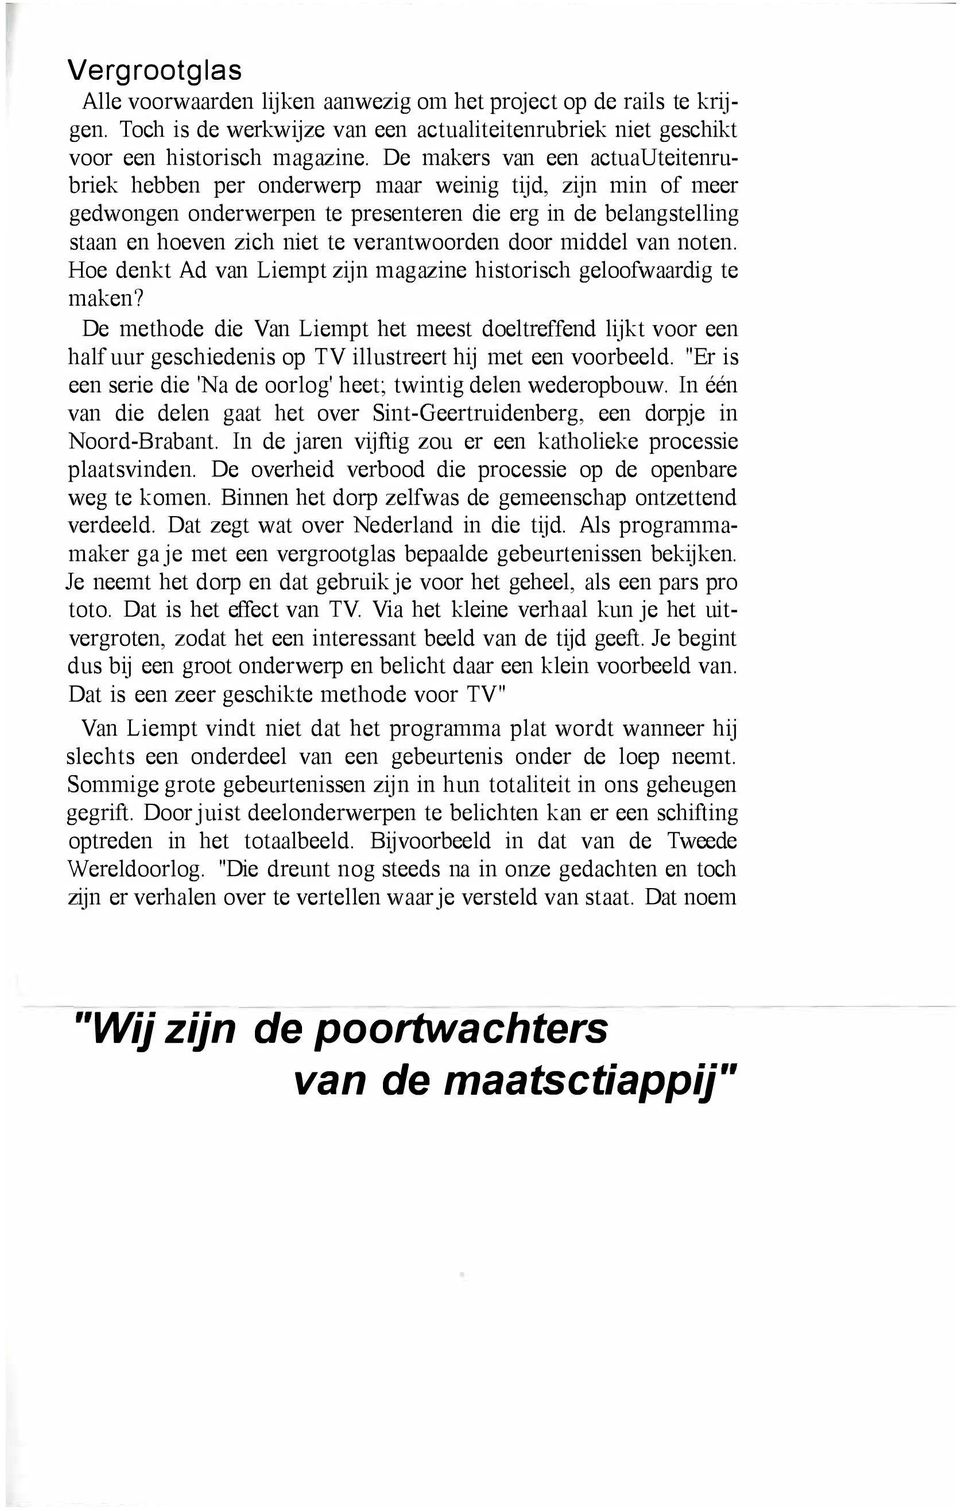 verantwoorden door middel van noten. Hoe denkt Ad van Liempt zijn magazine historisch geloofwaardig te maken?